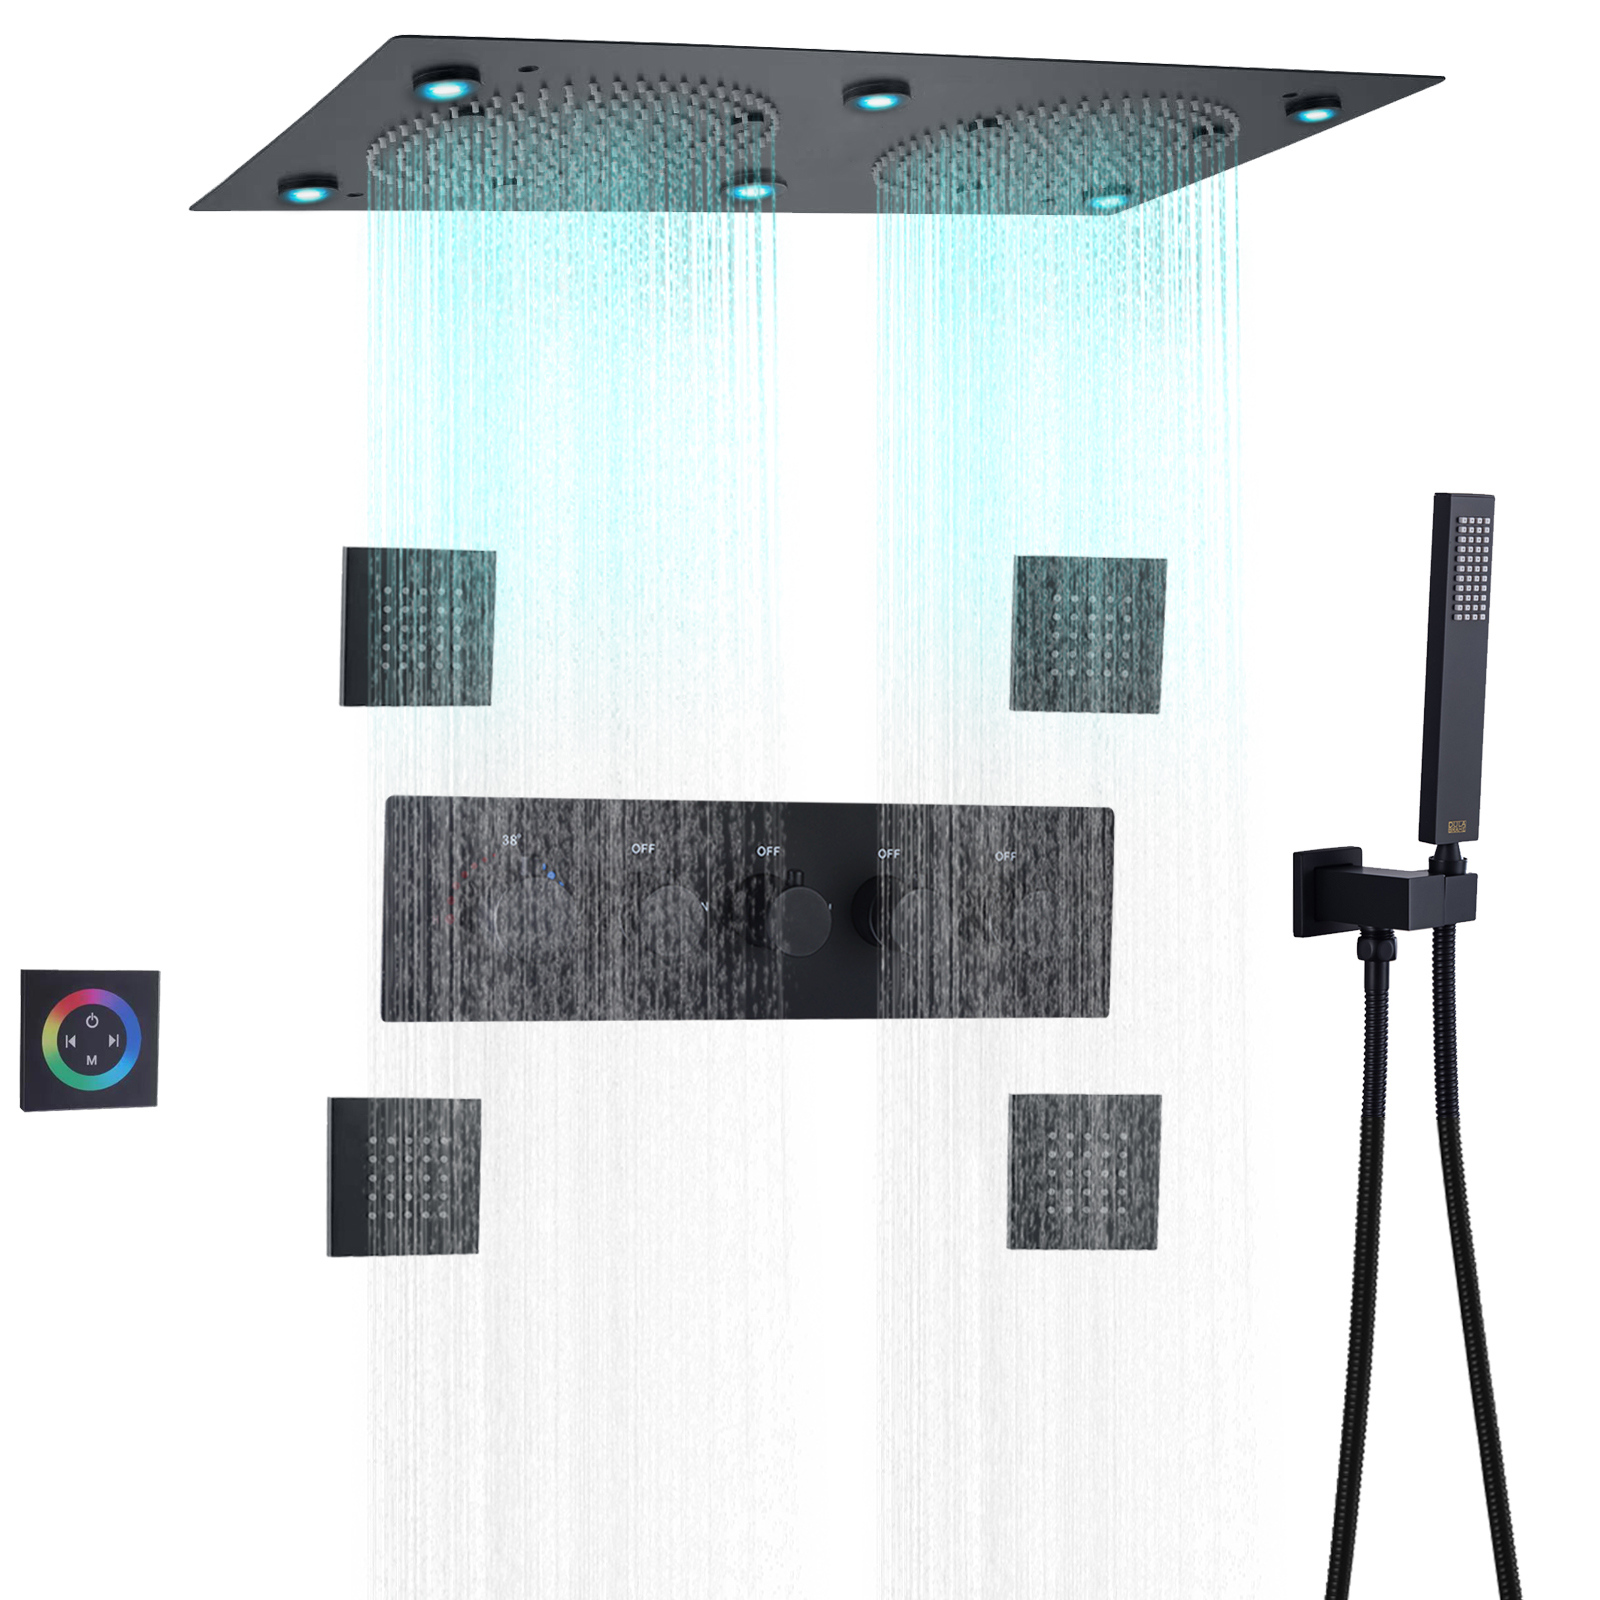 ماتي الأسود LED الحمام دش ثرموستاتي خلاط ارتفاع تدفق الأمطار سقف نظام الدش